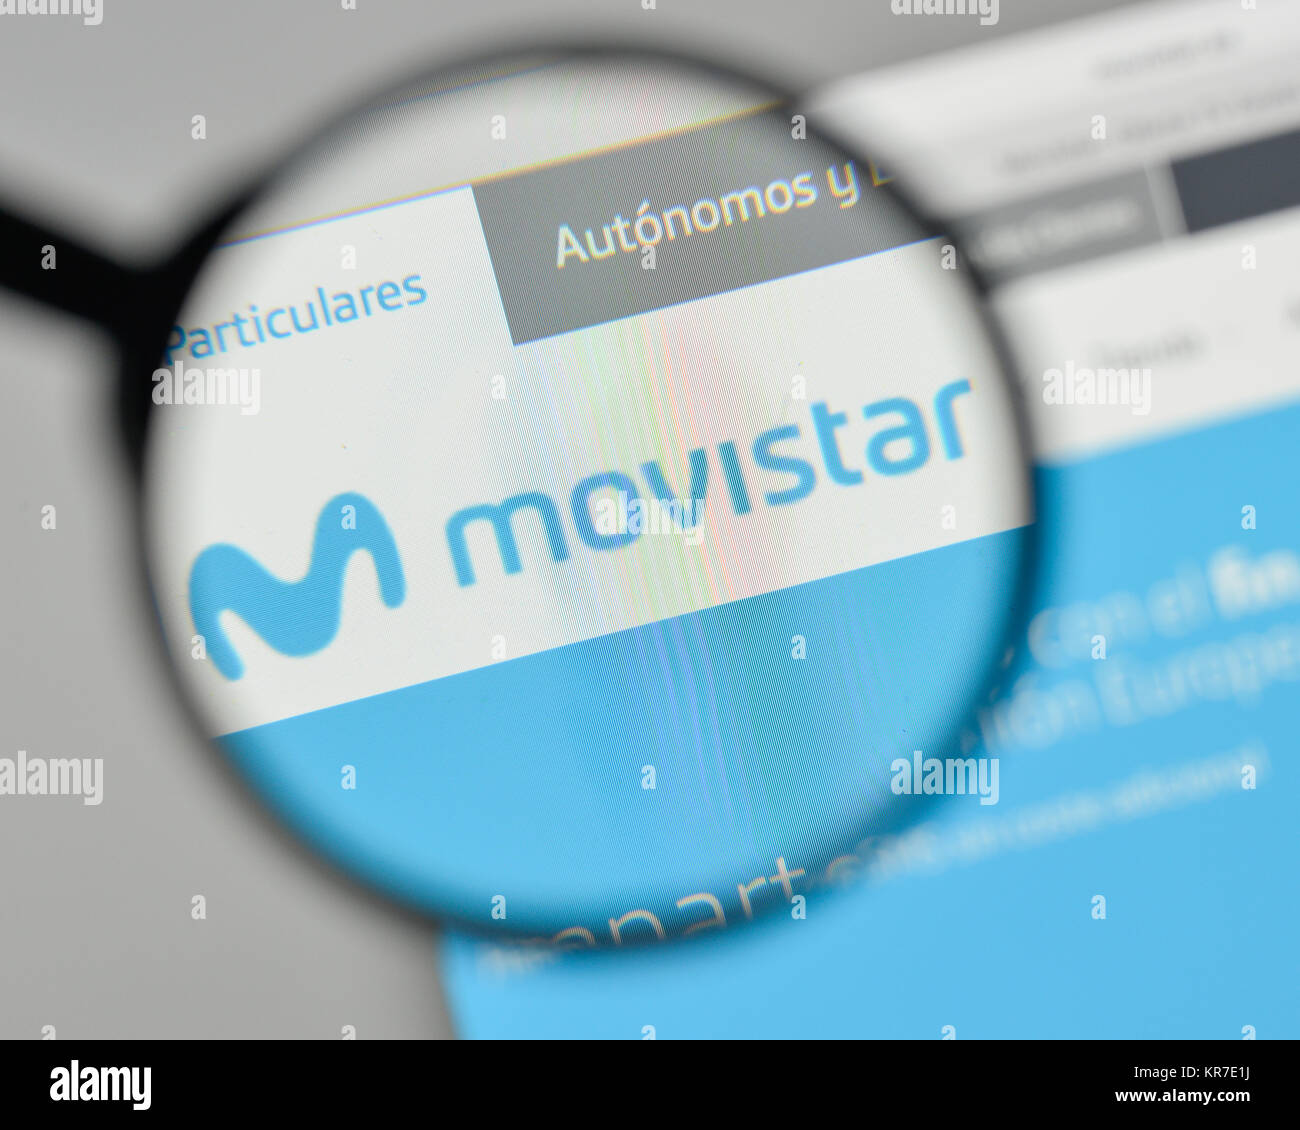 Milan, Italy - November 1, 2017: Movistar logo on the website homepage. Stock Photo